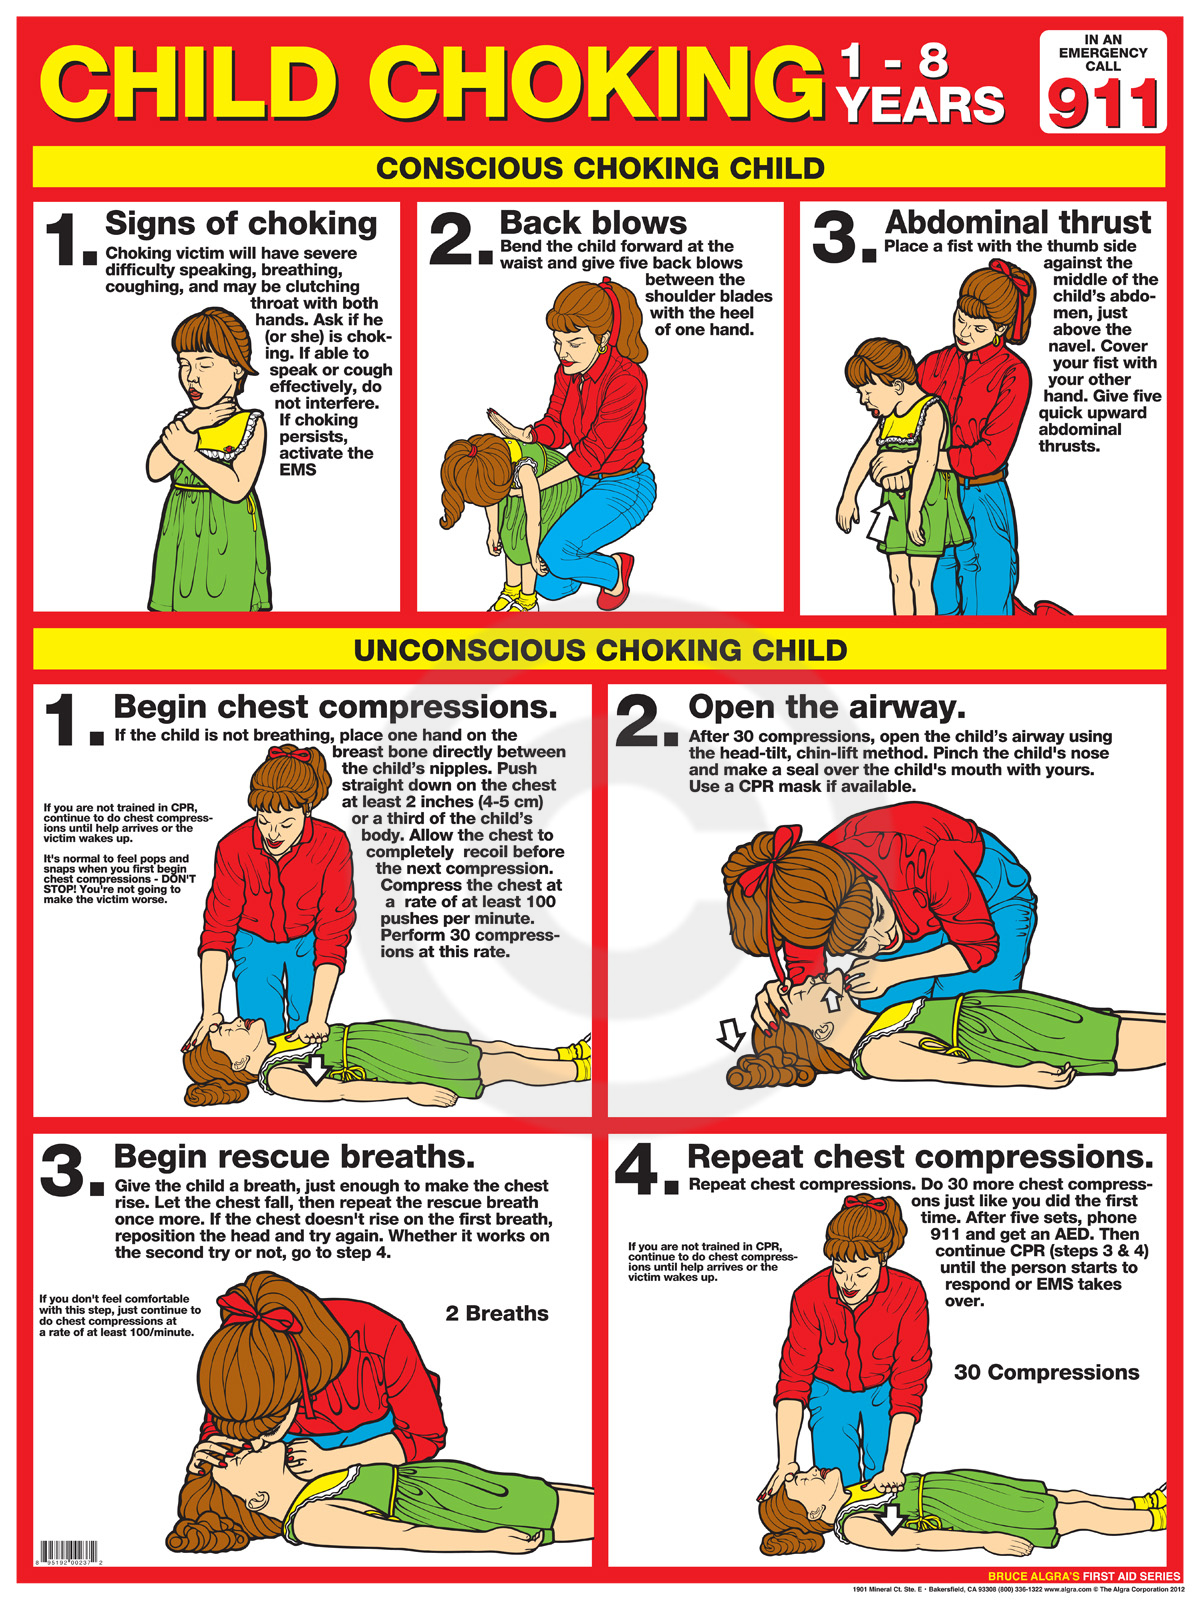 First Aid Choking Child